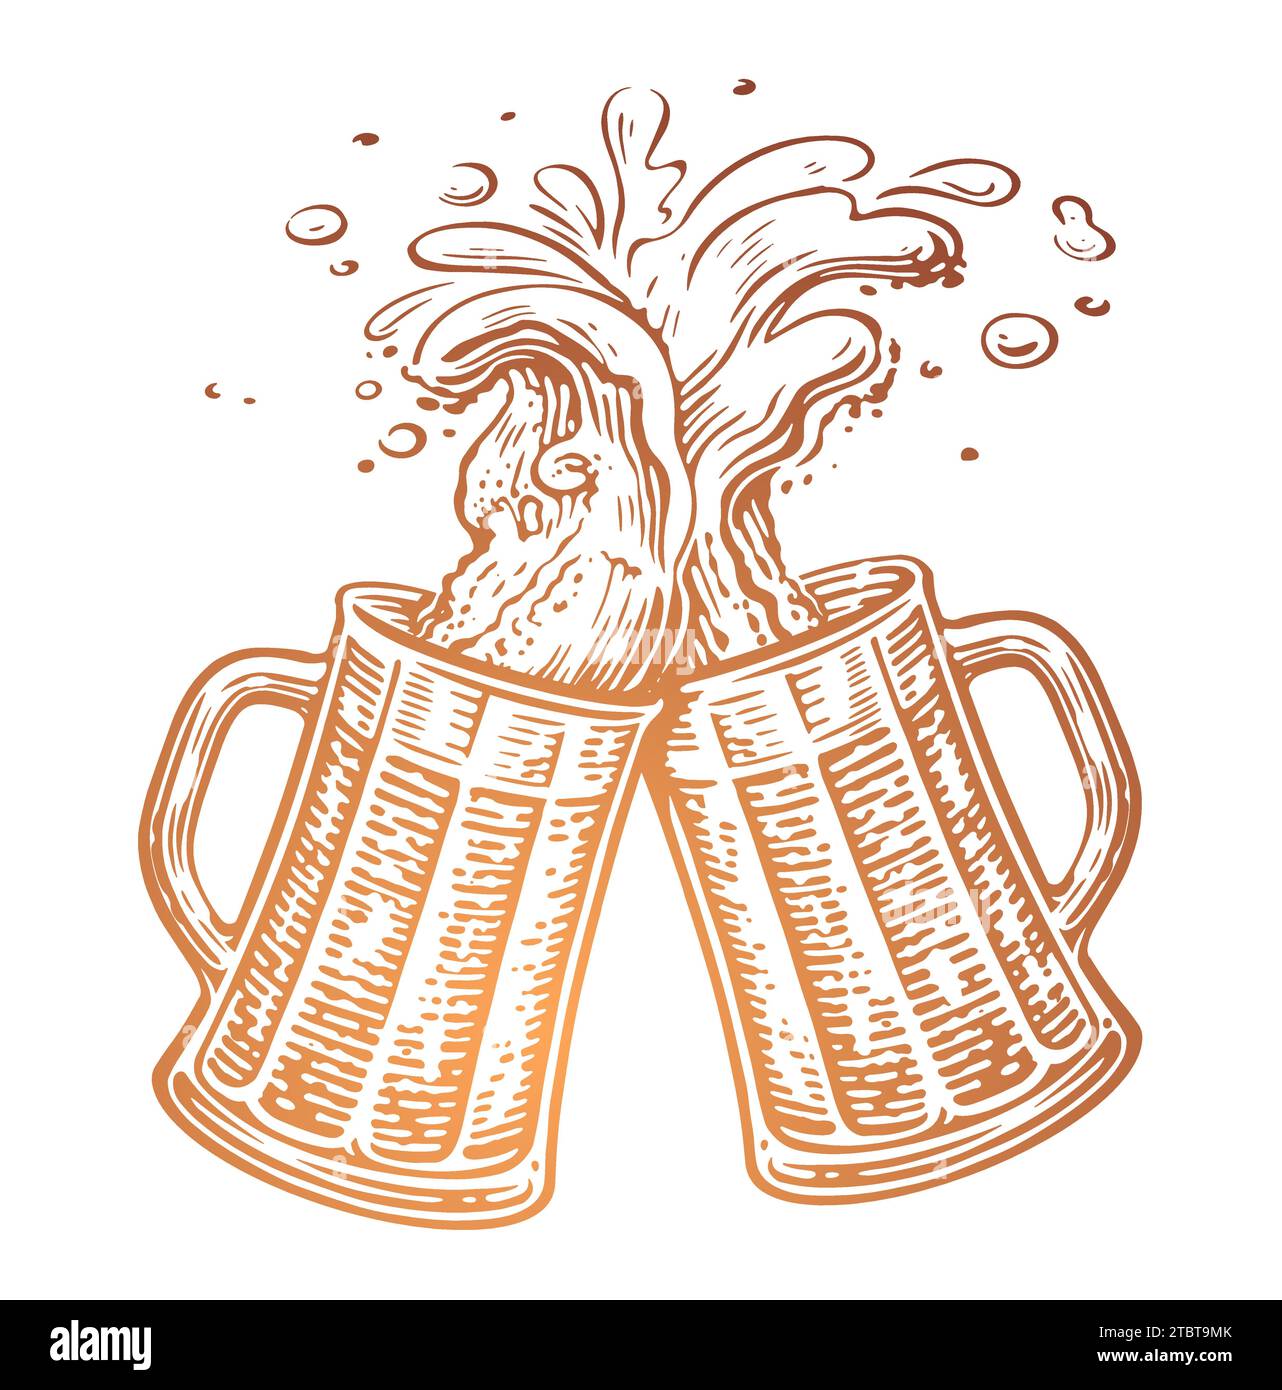 Tiré à la main deux tasses à bière grillées, Cheers. Tasses en verre clinking. Oktoberfest, illustration vectorielle Illustration de Vecteur